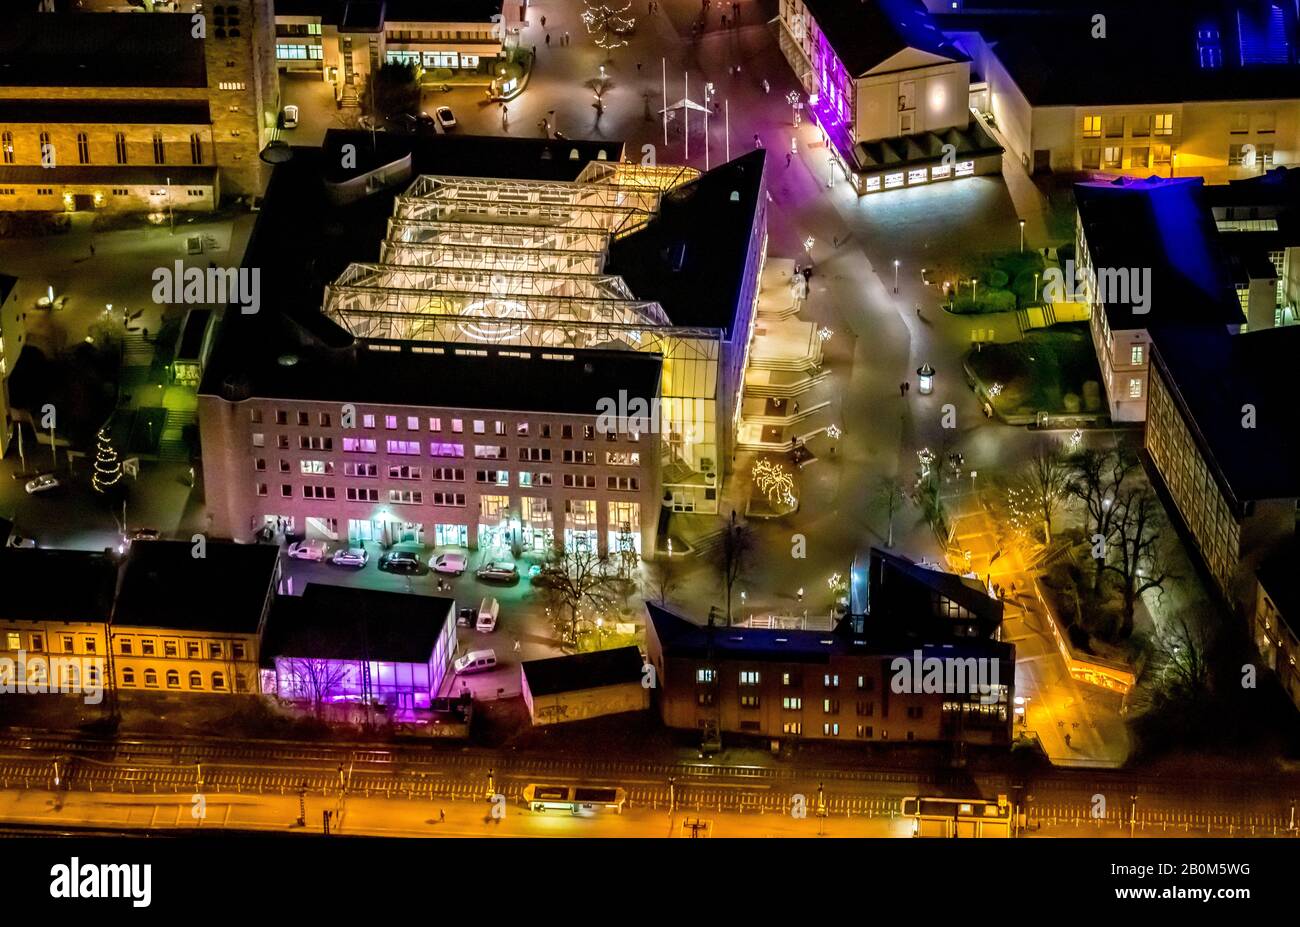 Vol photo aérien au-dessus de l'Unna nocturne, gare centrale d'Unna, gare d'Unna, administration de la ville Unna, hôtel de ville Unna, Unna, région de Ruhr, Nort Banque D'Images